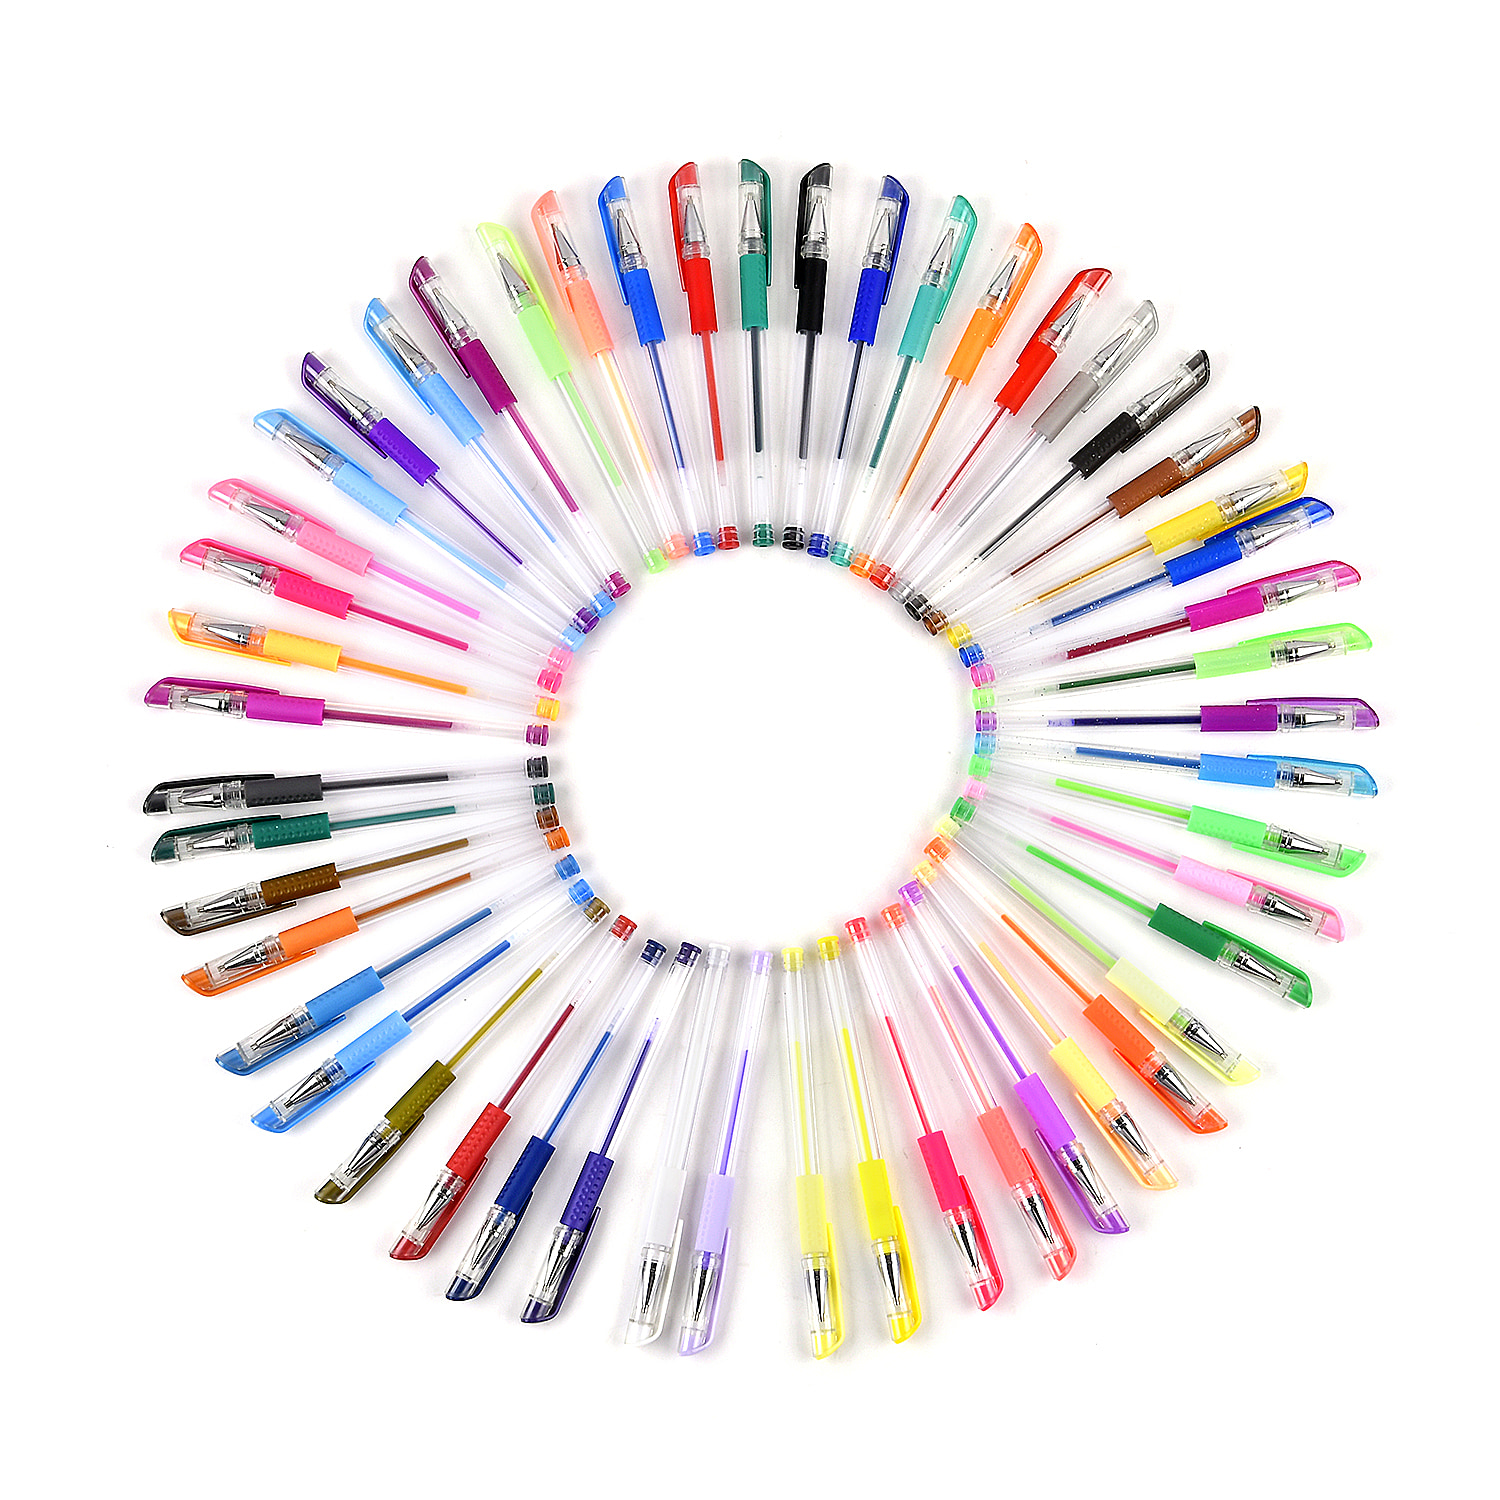 Pen-and-Pencil-Size-45x51x2-cm-Multi-Color-Multicolor